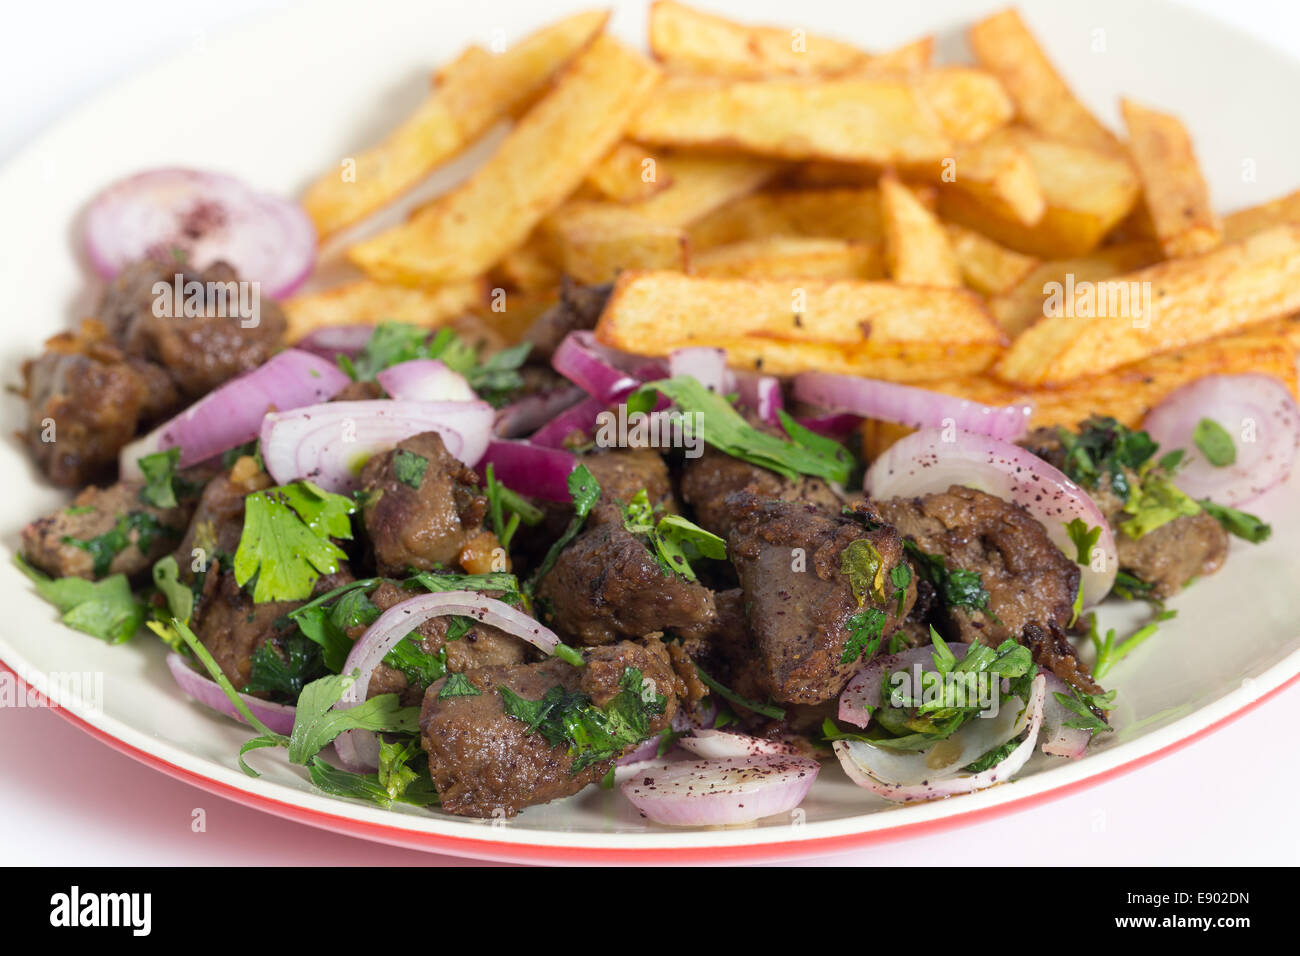 Albanische Leber, eine traditionelle türkische gewürzt Lamm Leber Rezept im gesamten Nahen Osten beliebt, mit Französisch frittierte chips Stockfoto